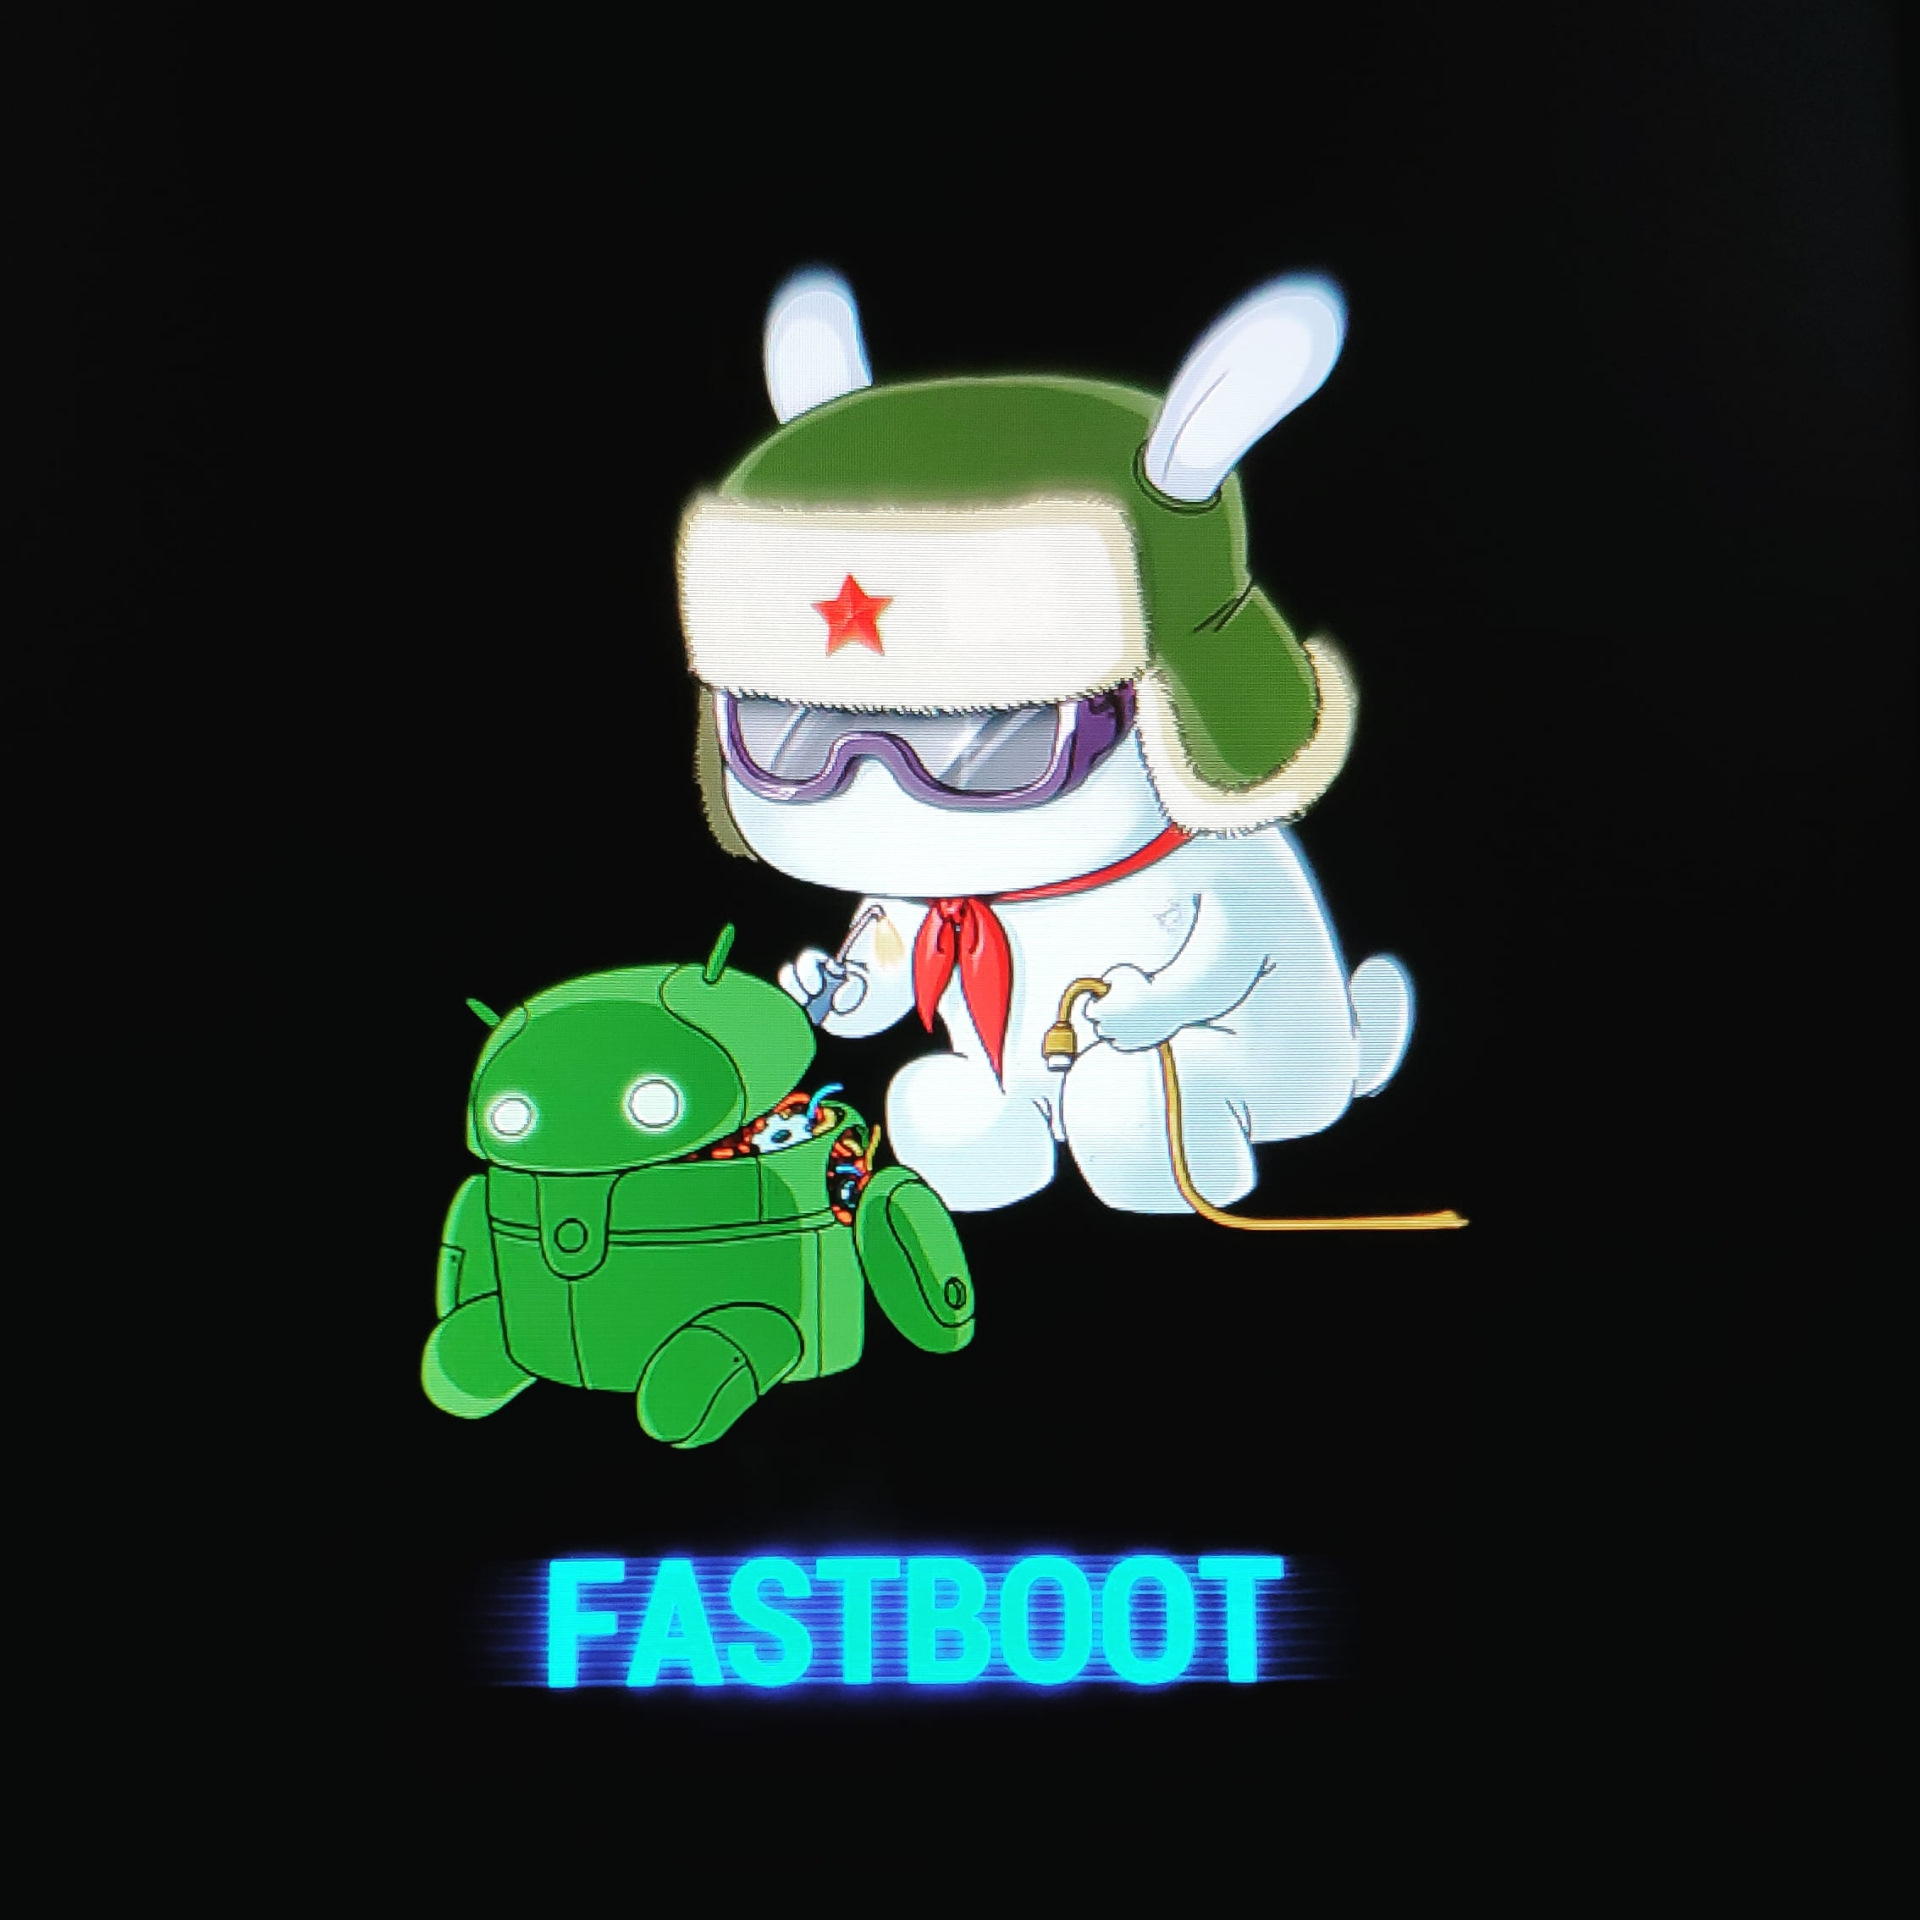 Fastboot redmi что делать. Кролик Xiaomi Fastboot. Заяц чинит андроид Xiaomi. Xiaomi Fastboot Screen. Заяц андроид Fastboot.